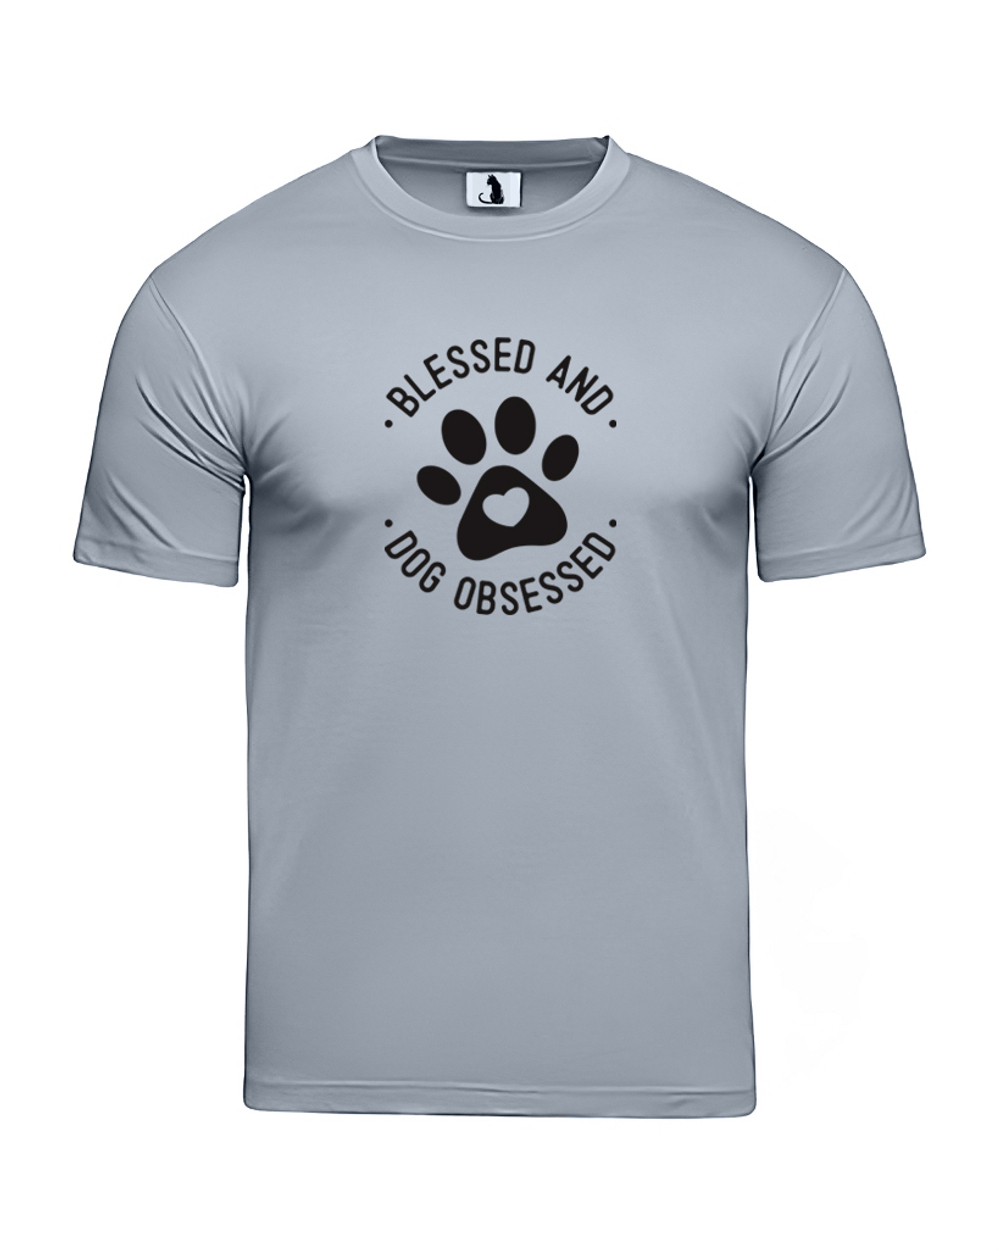 Футболка Blessed and dog obsessed unisex серая с черным рисунком